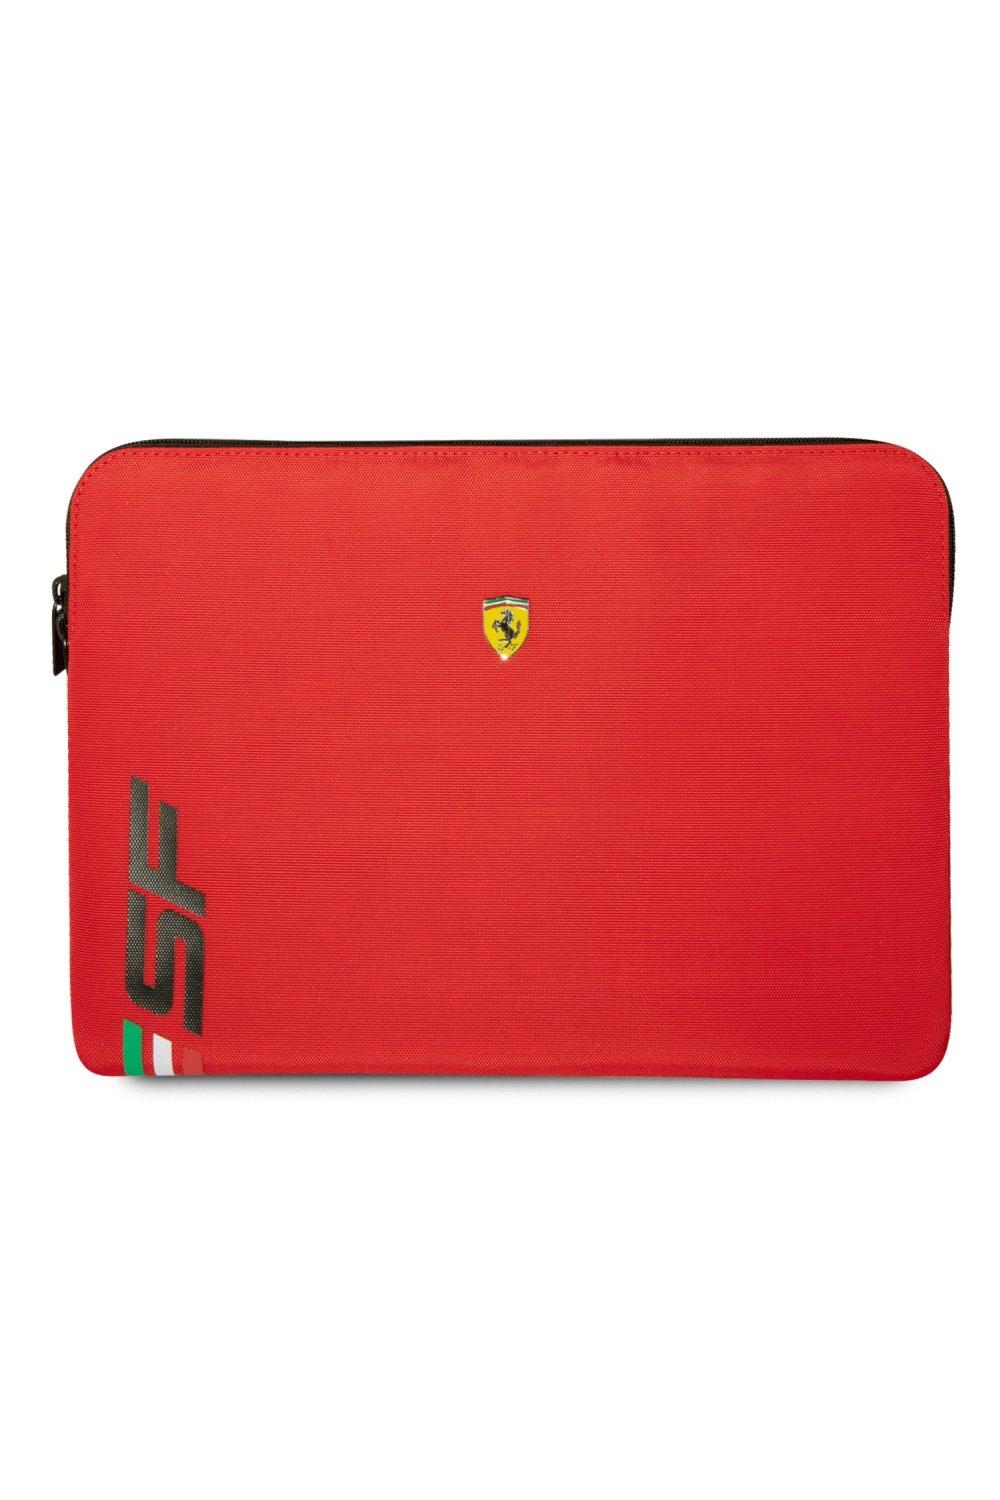 Чехол для ноутбука 14 дюймов из искусственной кожи с логотипом Sf Ferrari, красный чехол для планшета alcatel 1t 7 дюймов 10 дюймов alcatel 3t 8 дюймов 10 дюймов alcatel a3 10 дюймов защитный чехол из искусственной кожи бесплатный стилус